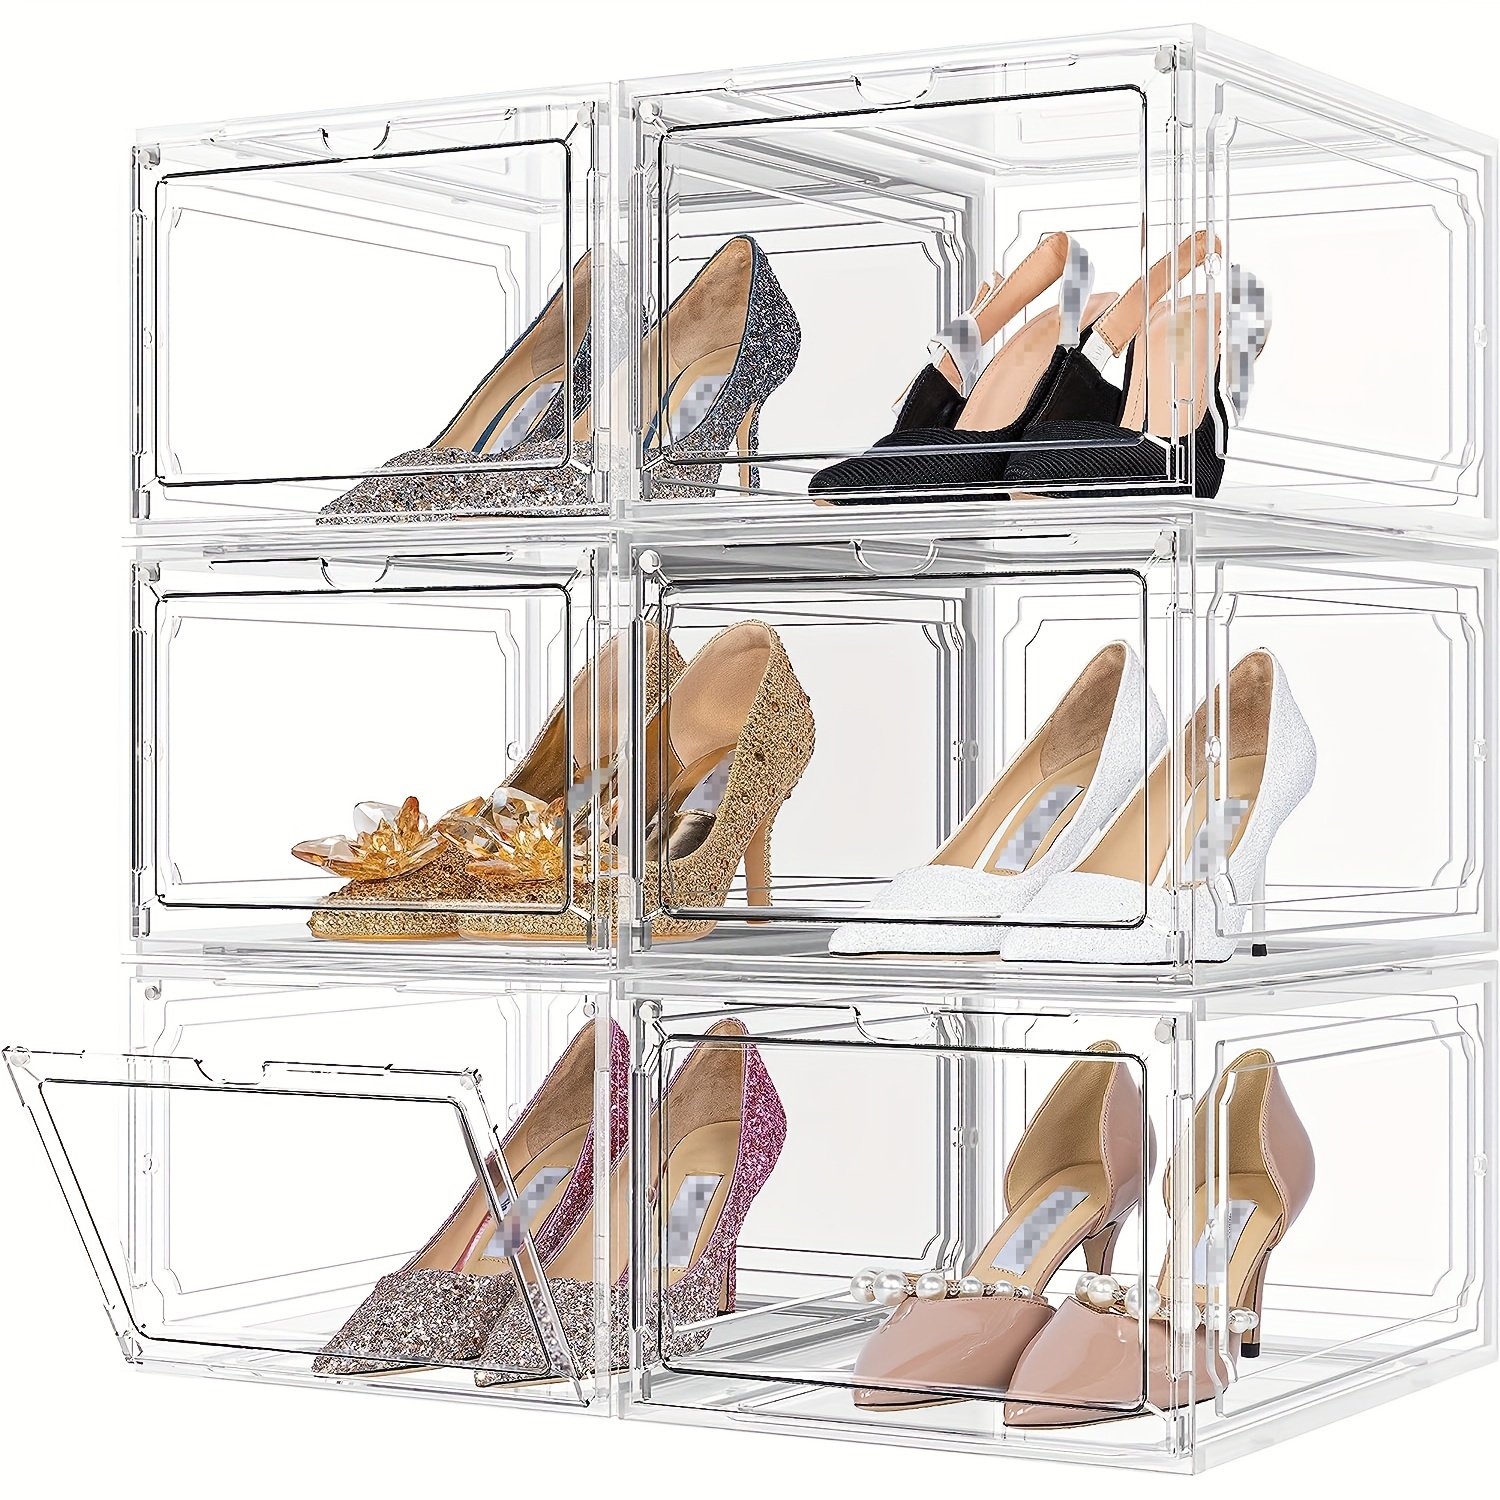 3-stufige Aufbewahrung sbox transparente ausziehbare Schuhs chrank